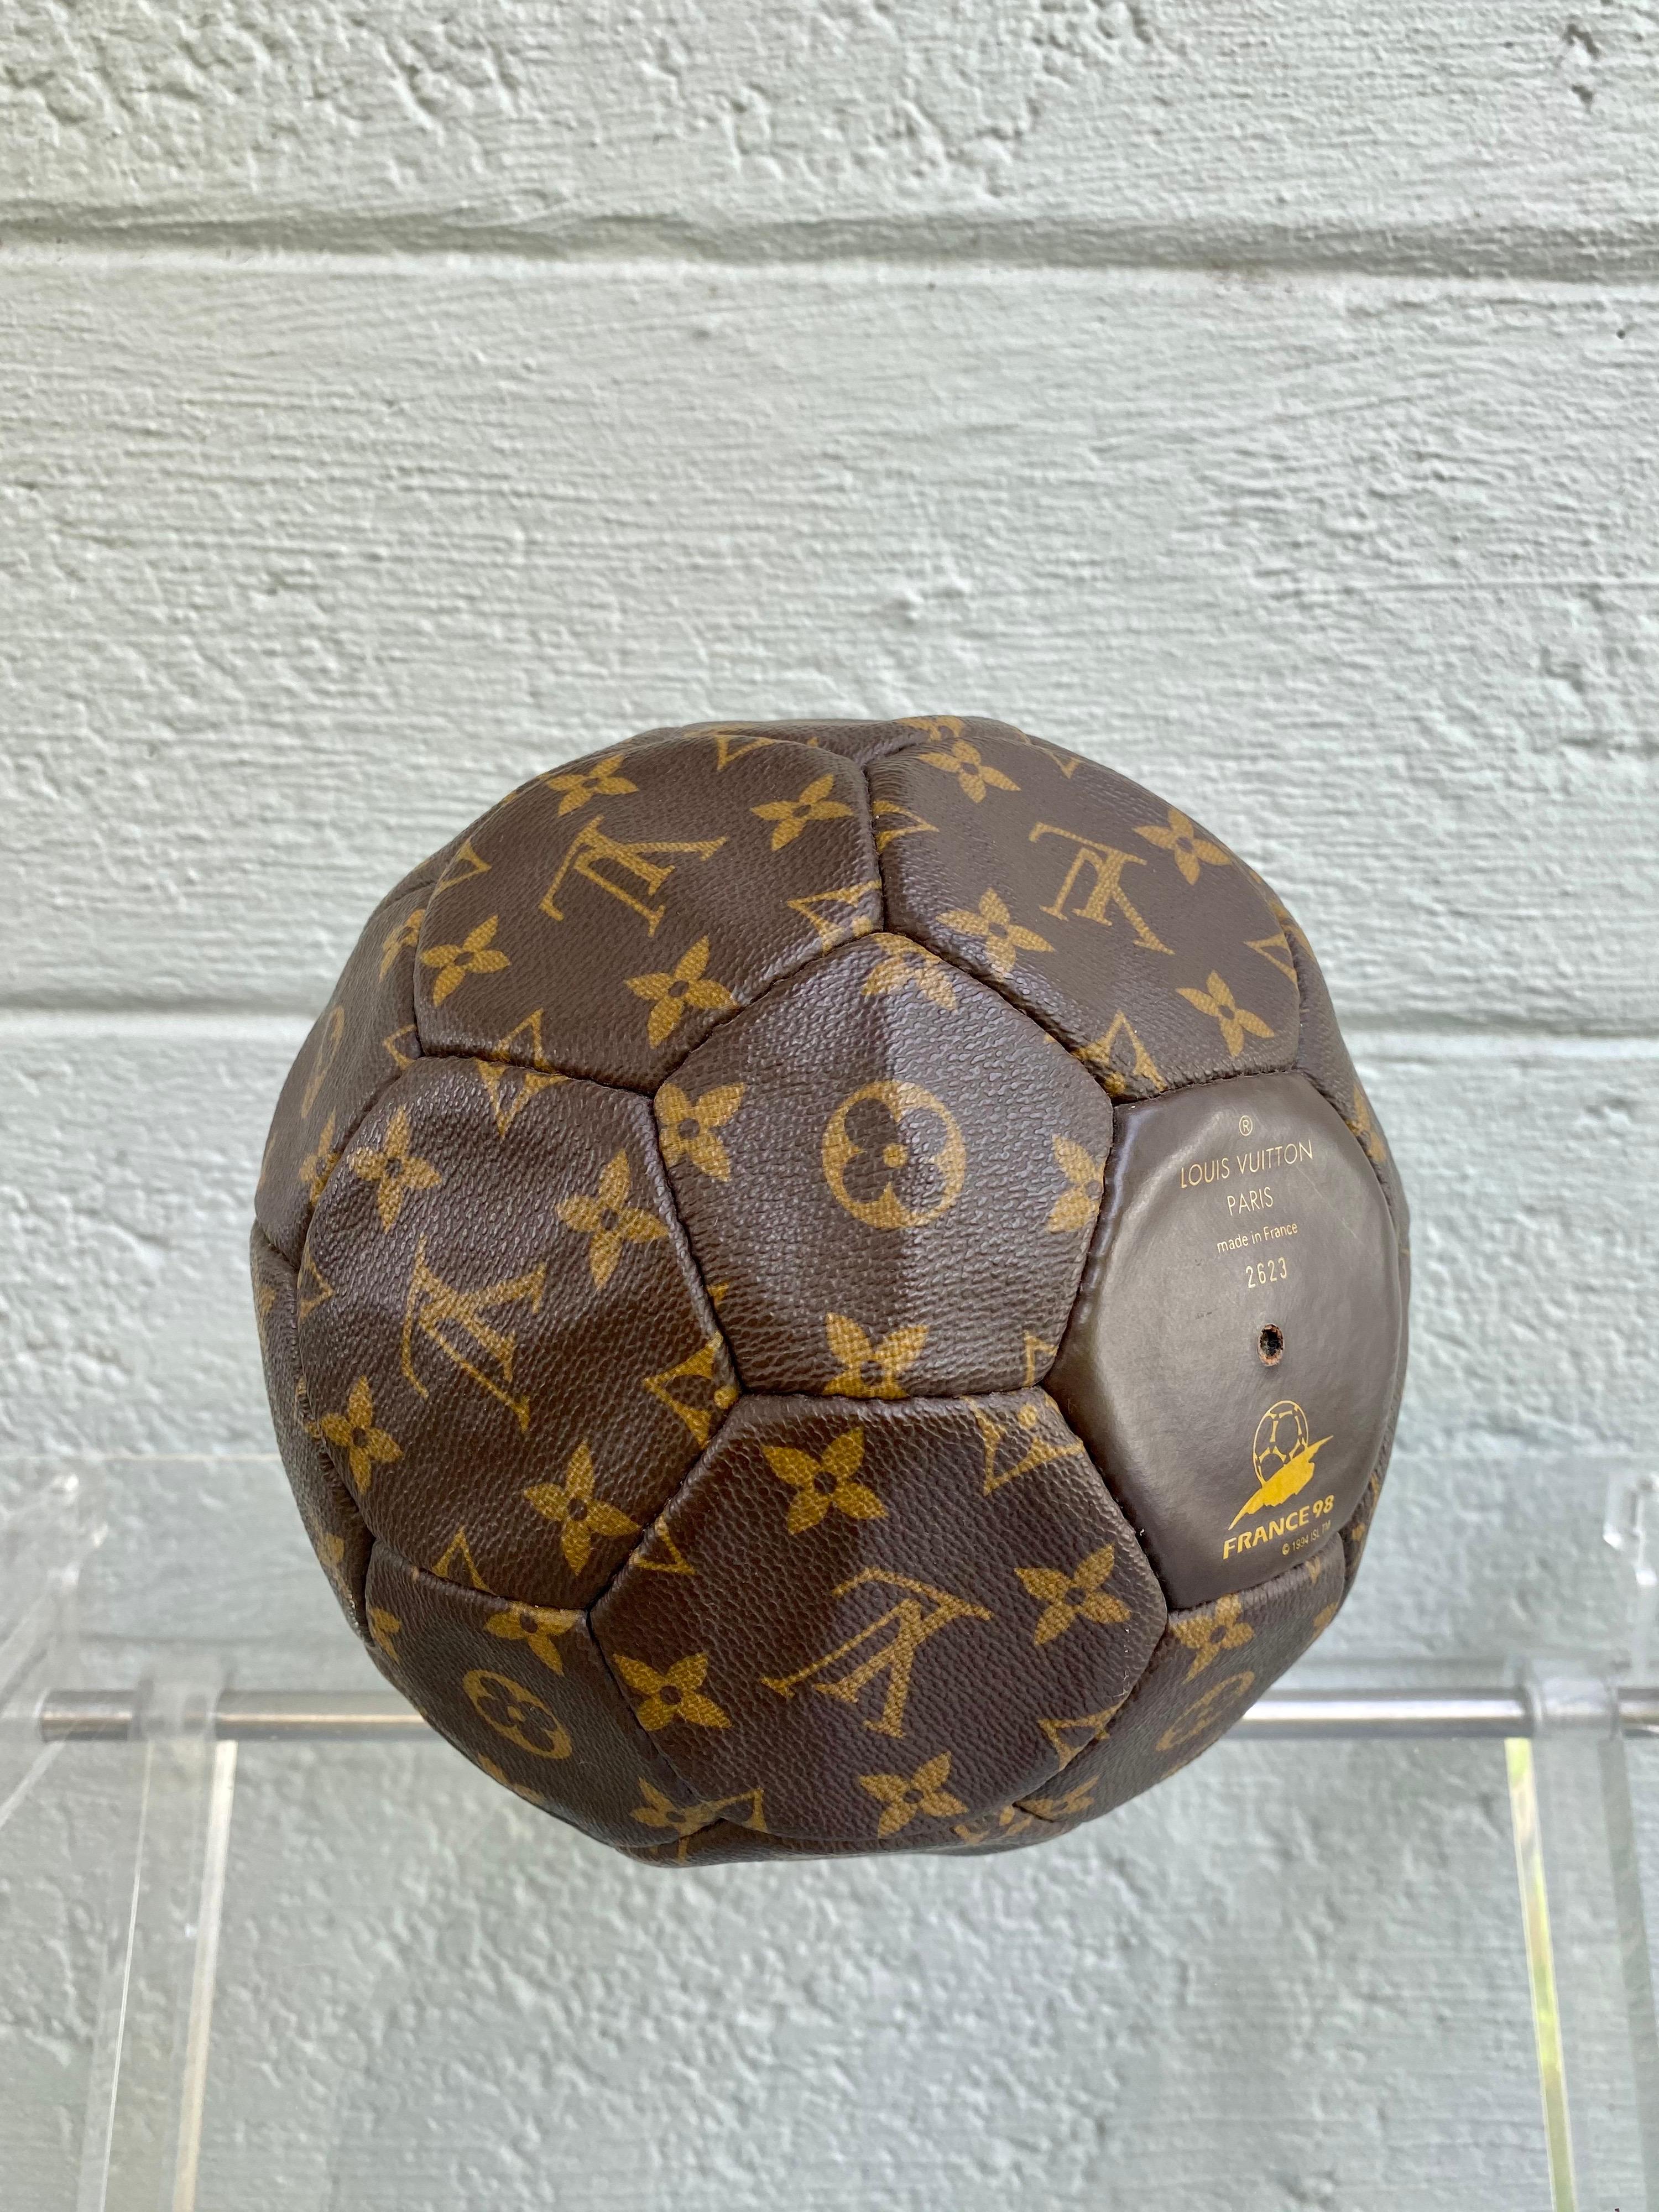 Pin by Ale Espinoza on Louis Vuitton  Louis vuitton, Soccer ball, Soccer  balls